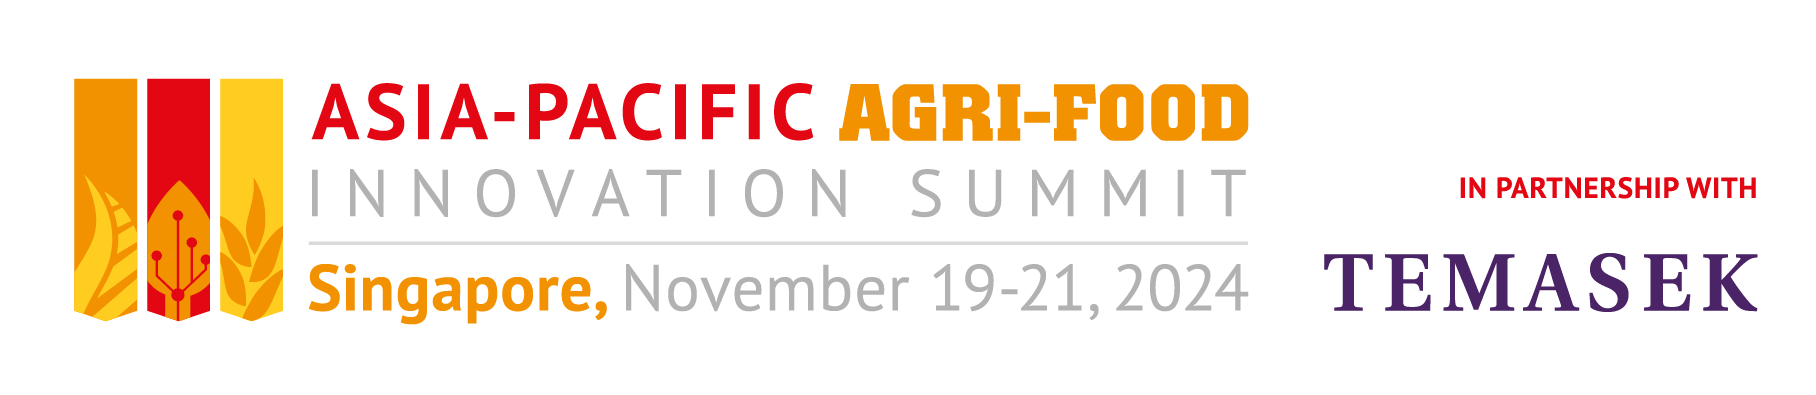 Asia-Pacific Agri-Food Innovation Summit